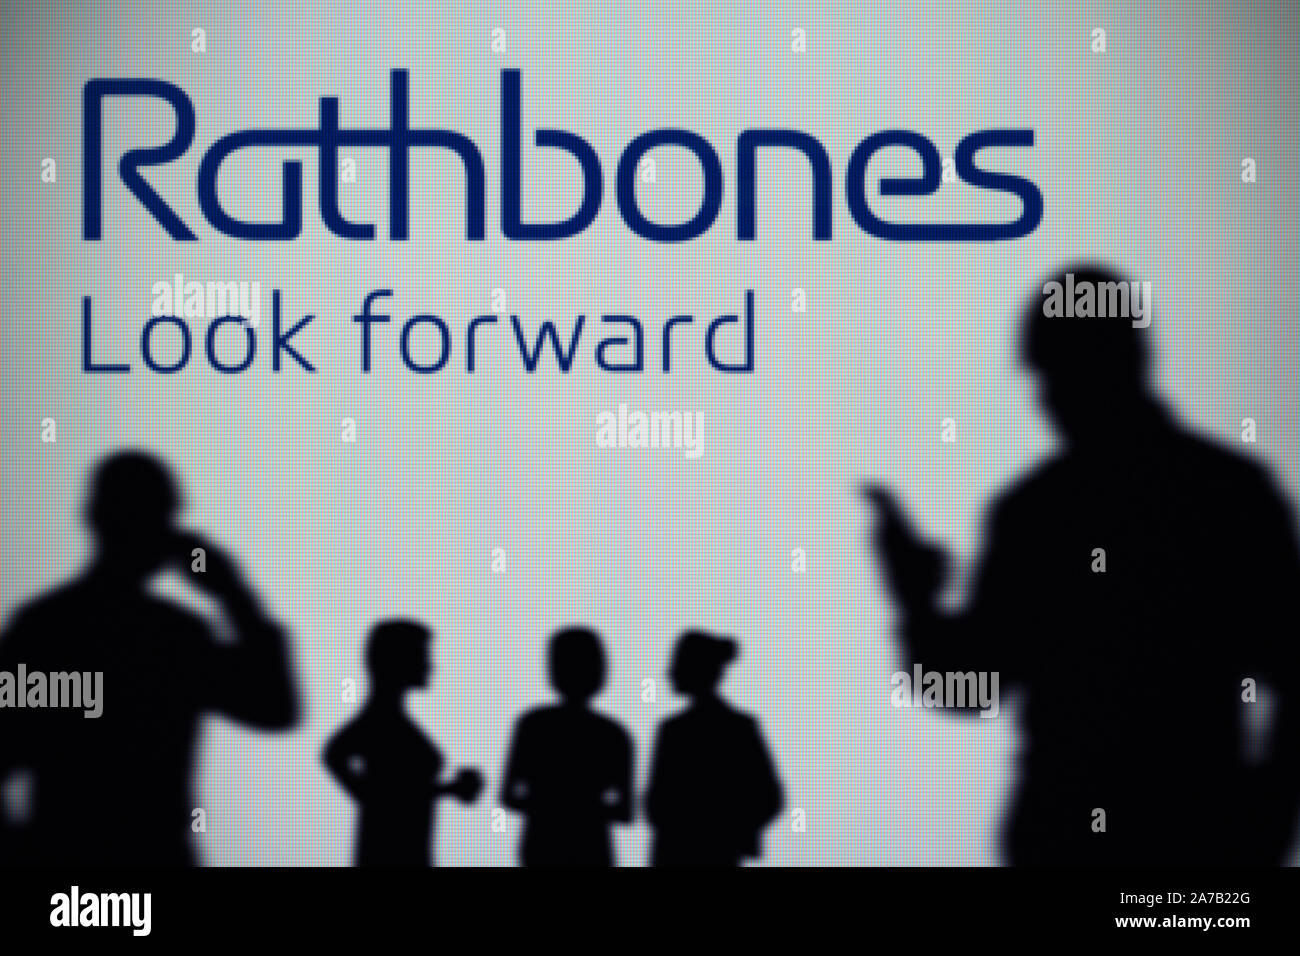 Das Rathbone Brothers Logo ist auf einen LED-Bildschirm im Hintergrund, während eine Silhouette Person ein Smartphone verwendet (nur redaktionelle Nutzung) Stockfoto